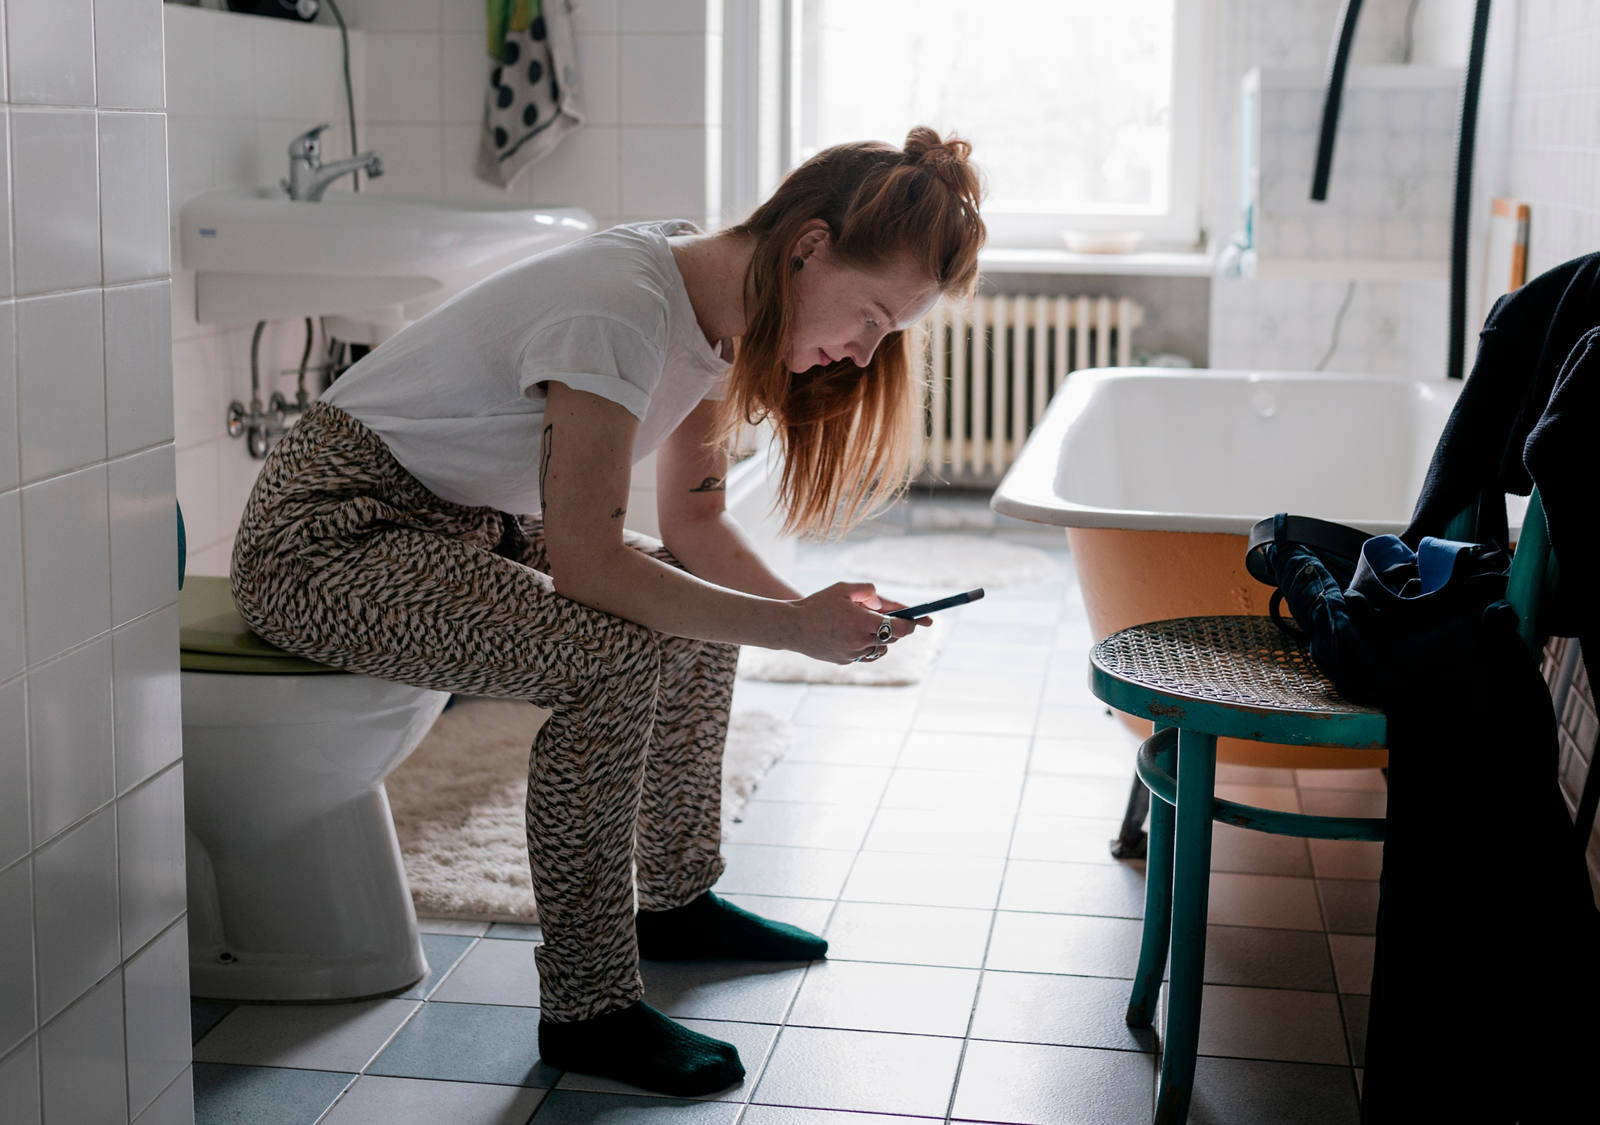 Eine Frau im Badezimmer sitzt auf der Toilette und schaut in ihr Smartphone.